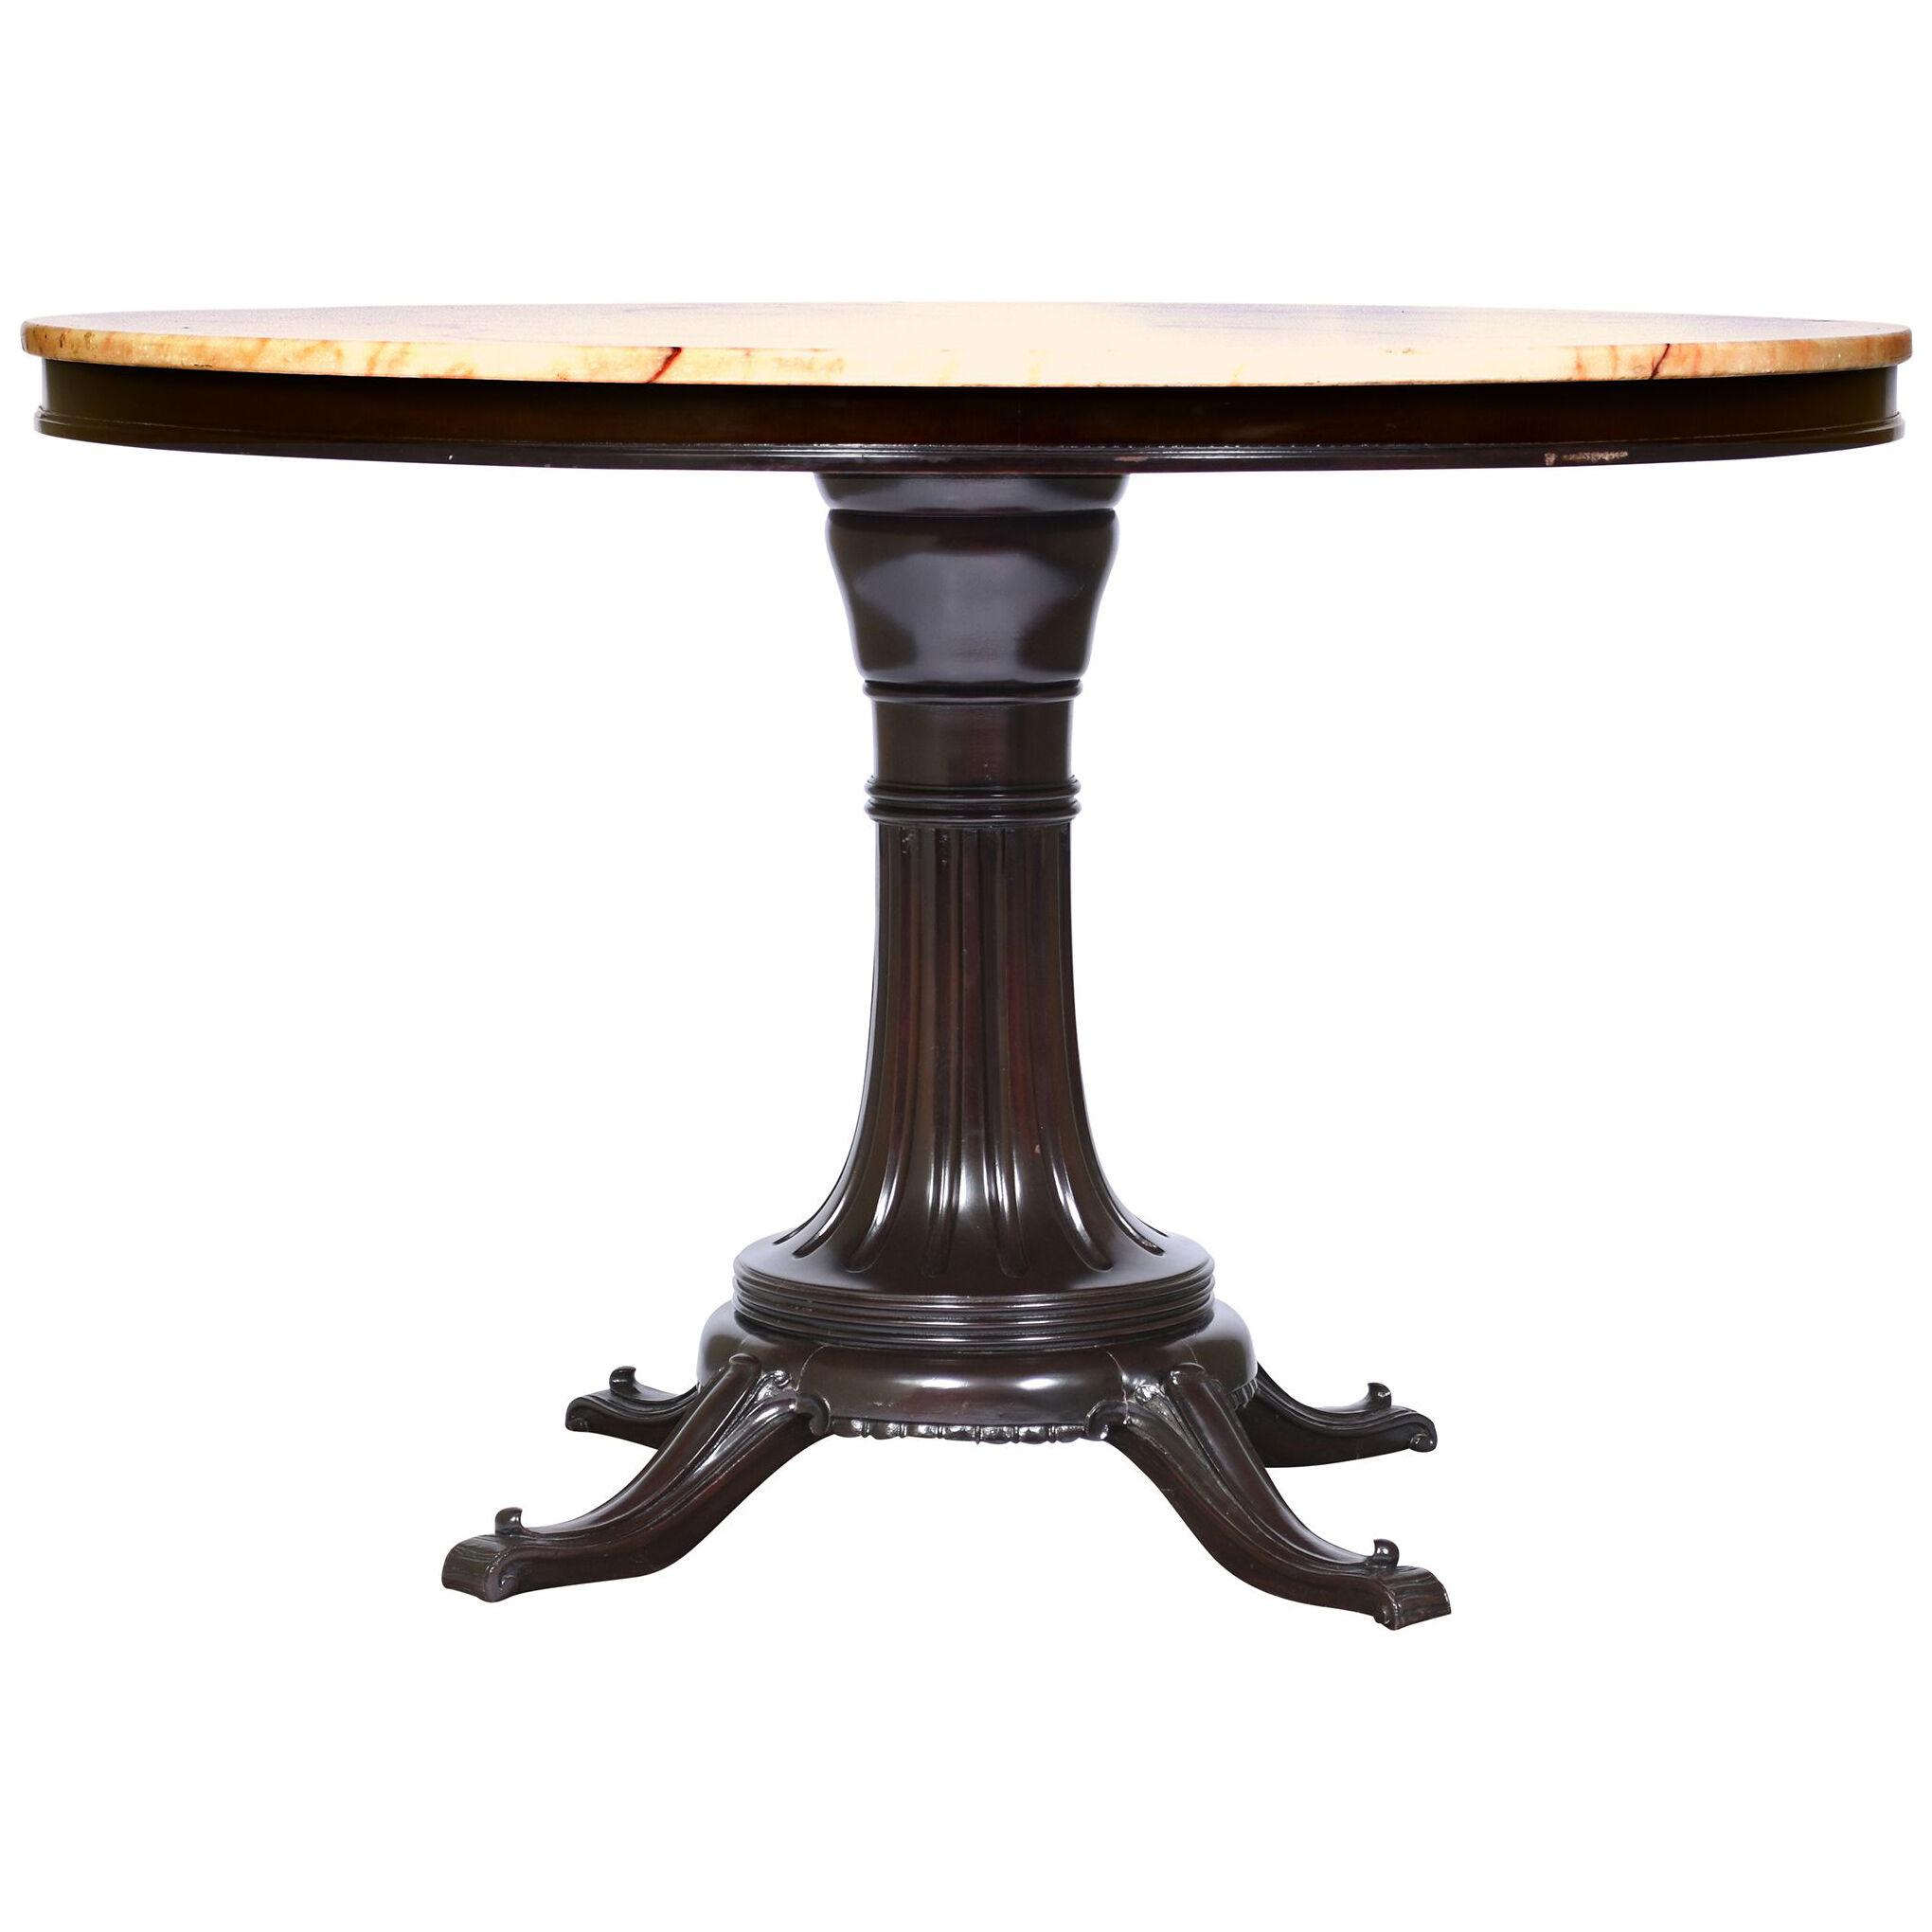 Round Onyx Top Mahogany Table Art Deco Period Italy 1920's